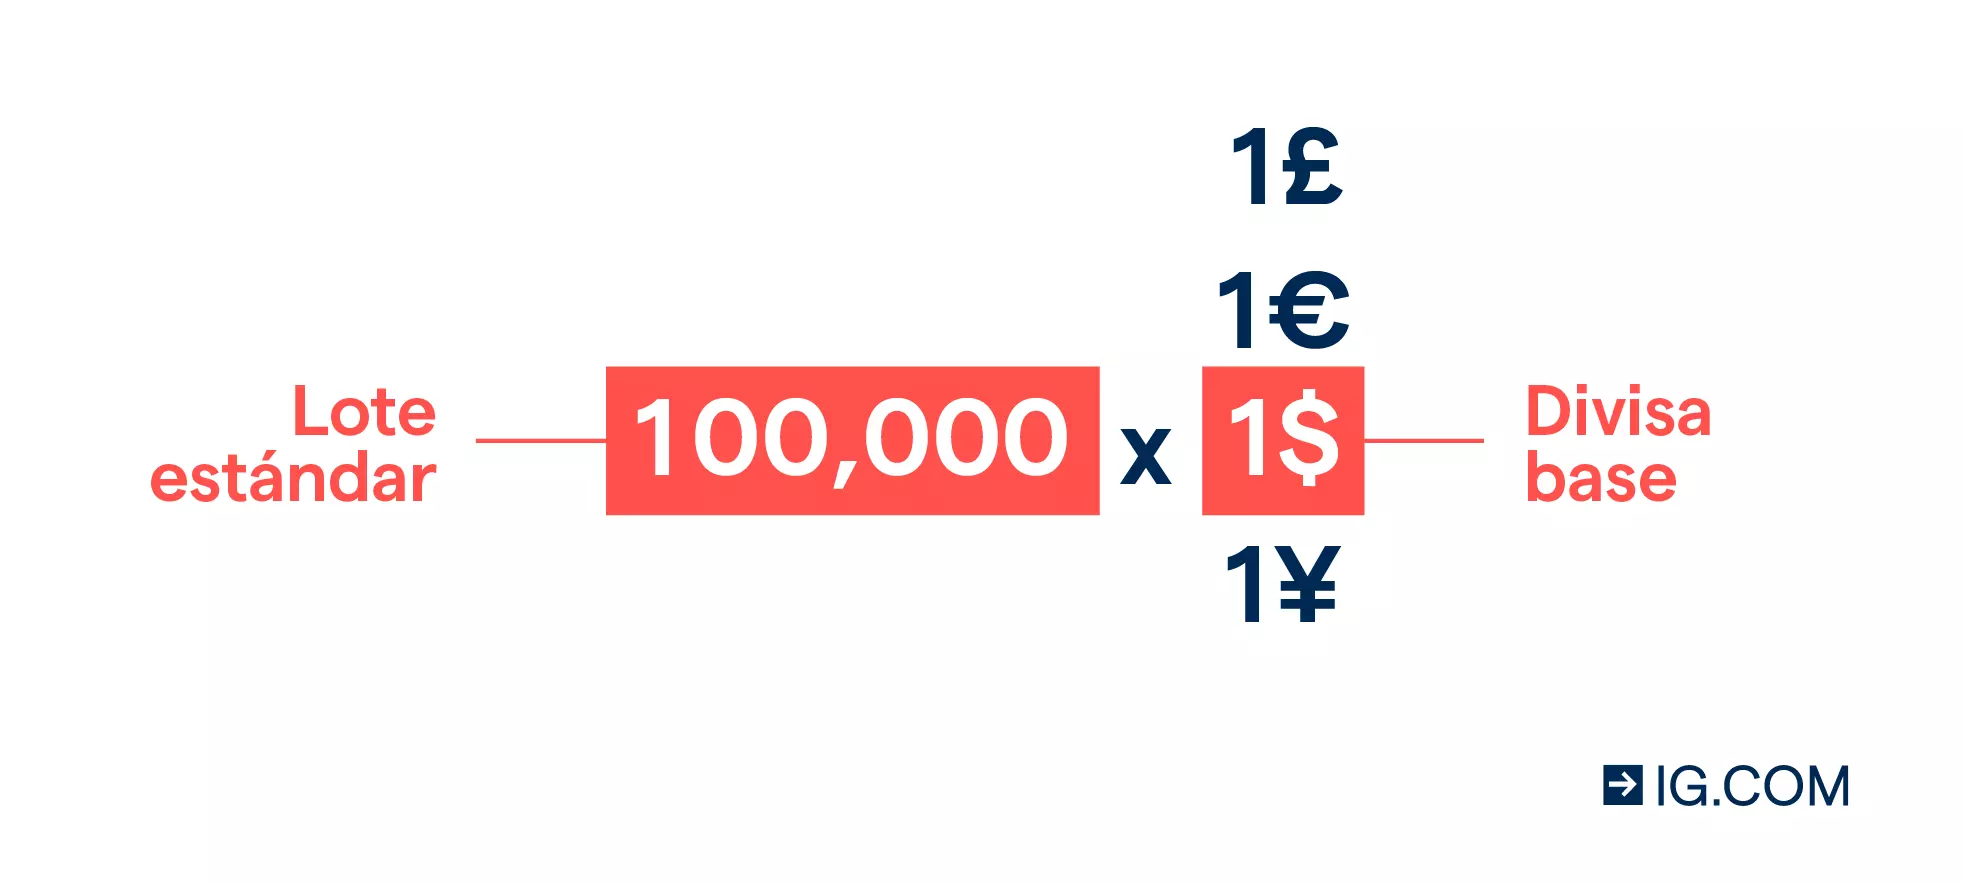 Trading de divisas: un lote estándar vale 100 000 unidades de la divisa base